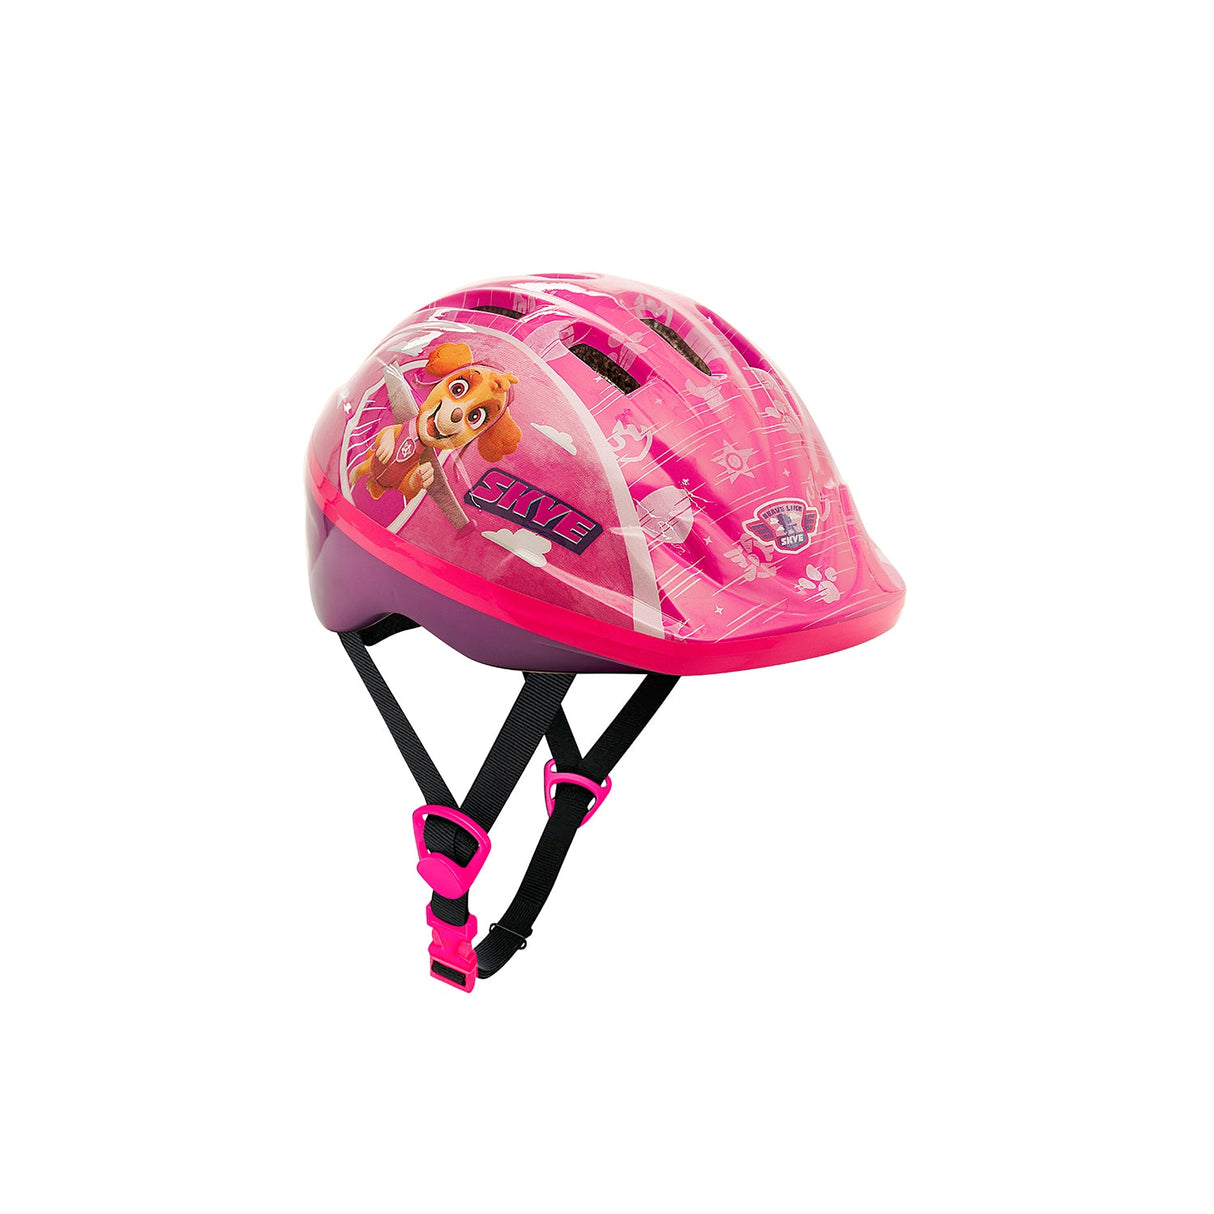 Spartan Nickelodeon Paw Patrol Skye Helmet New